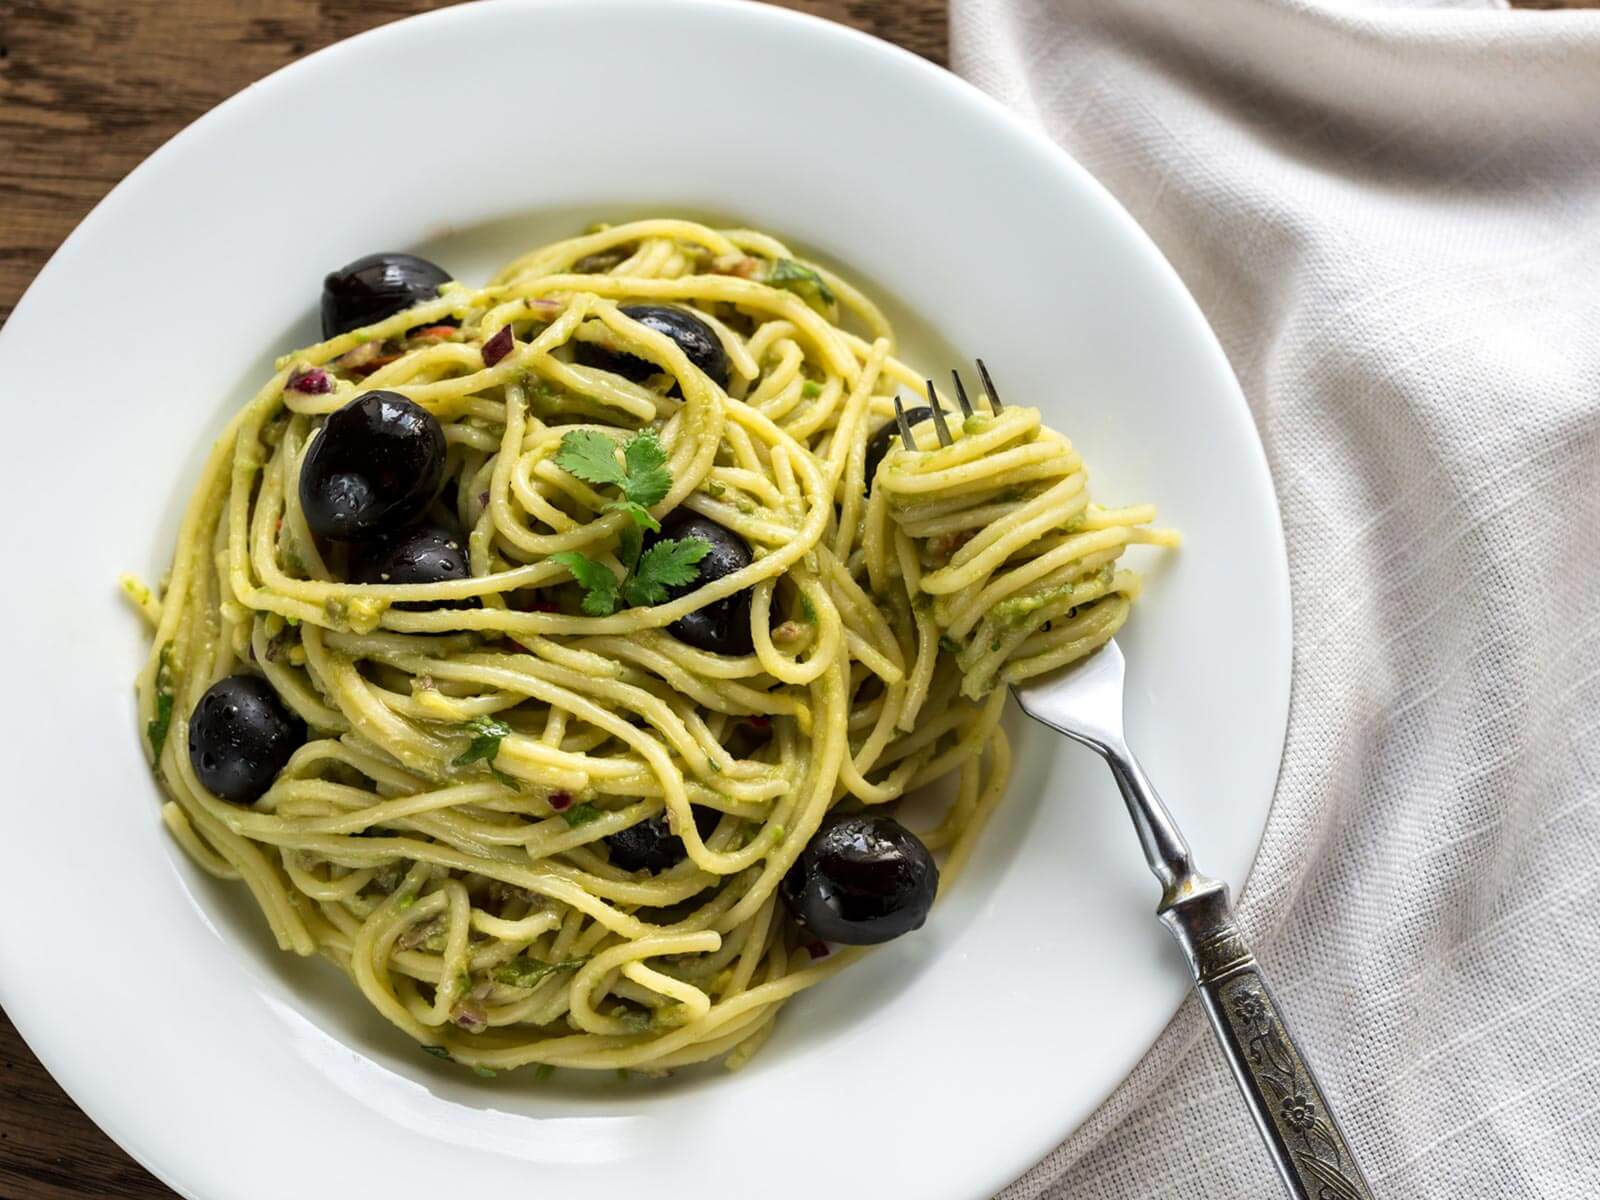 Tress-Rezept für vegetarische Pasta mit Spaghetti, Joghurt und schwarzen Oliven